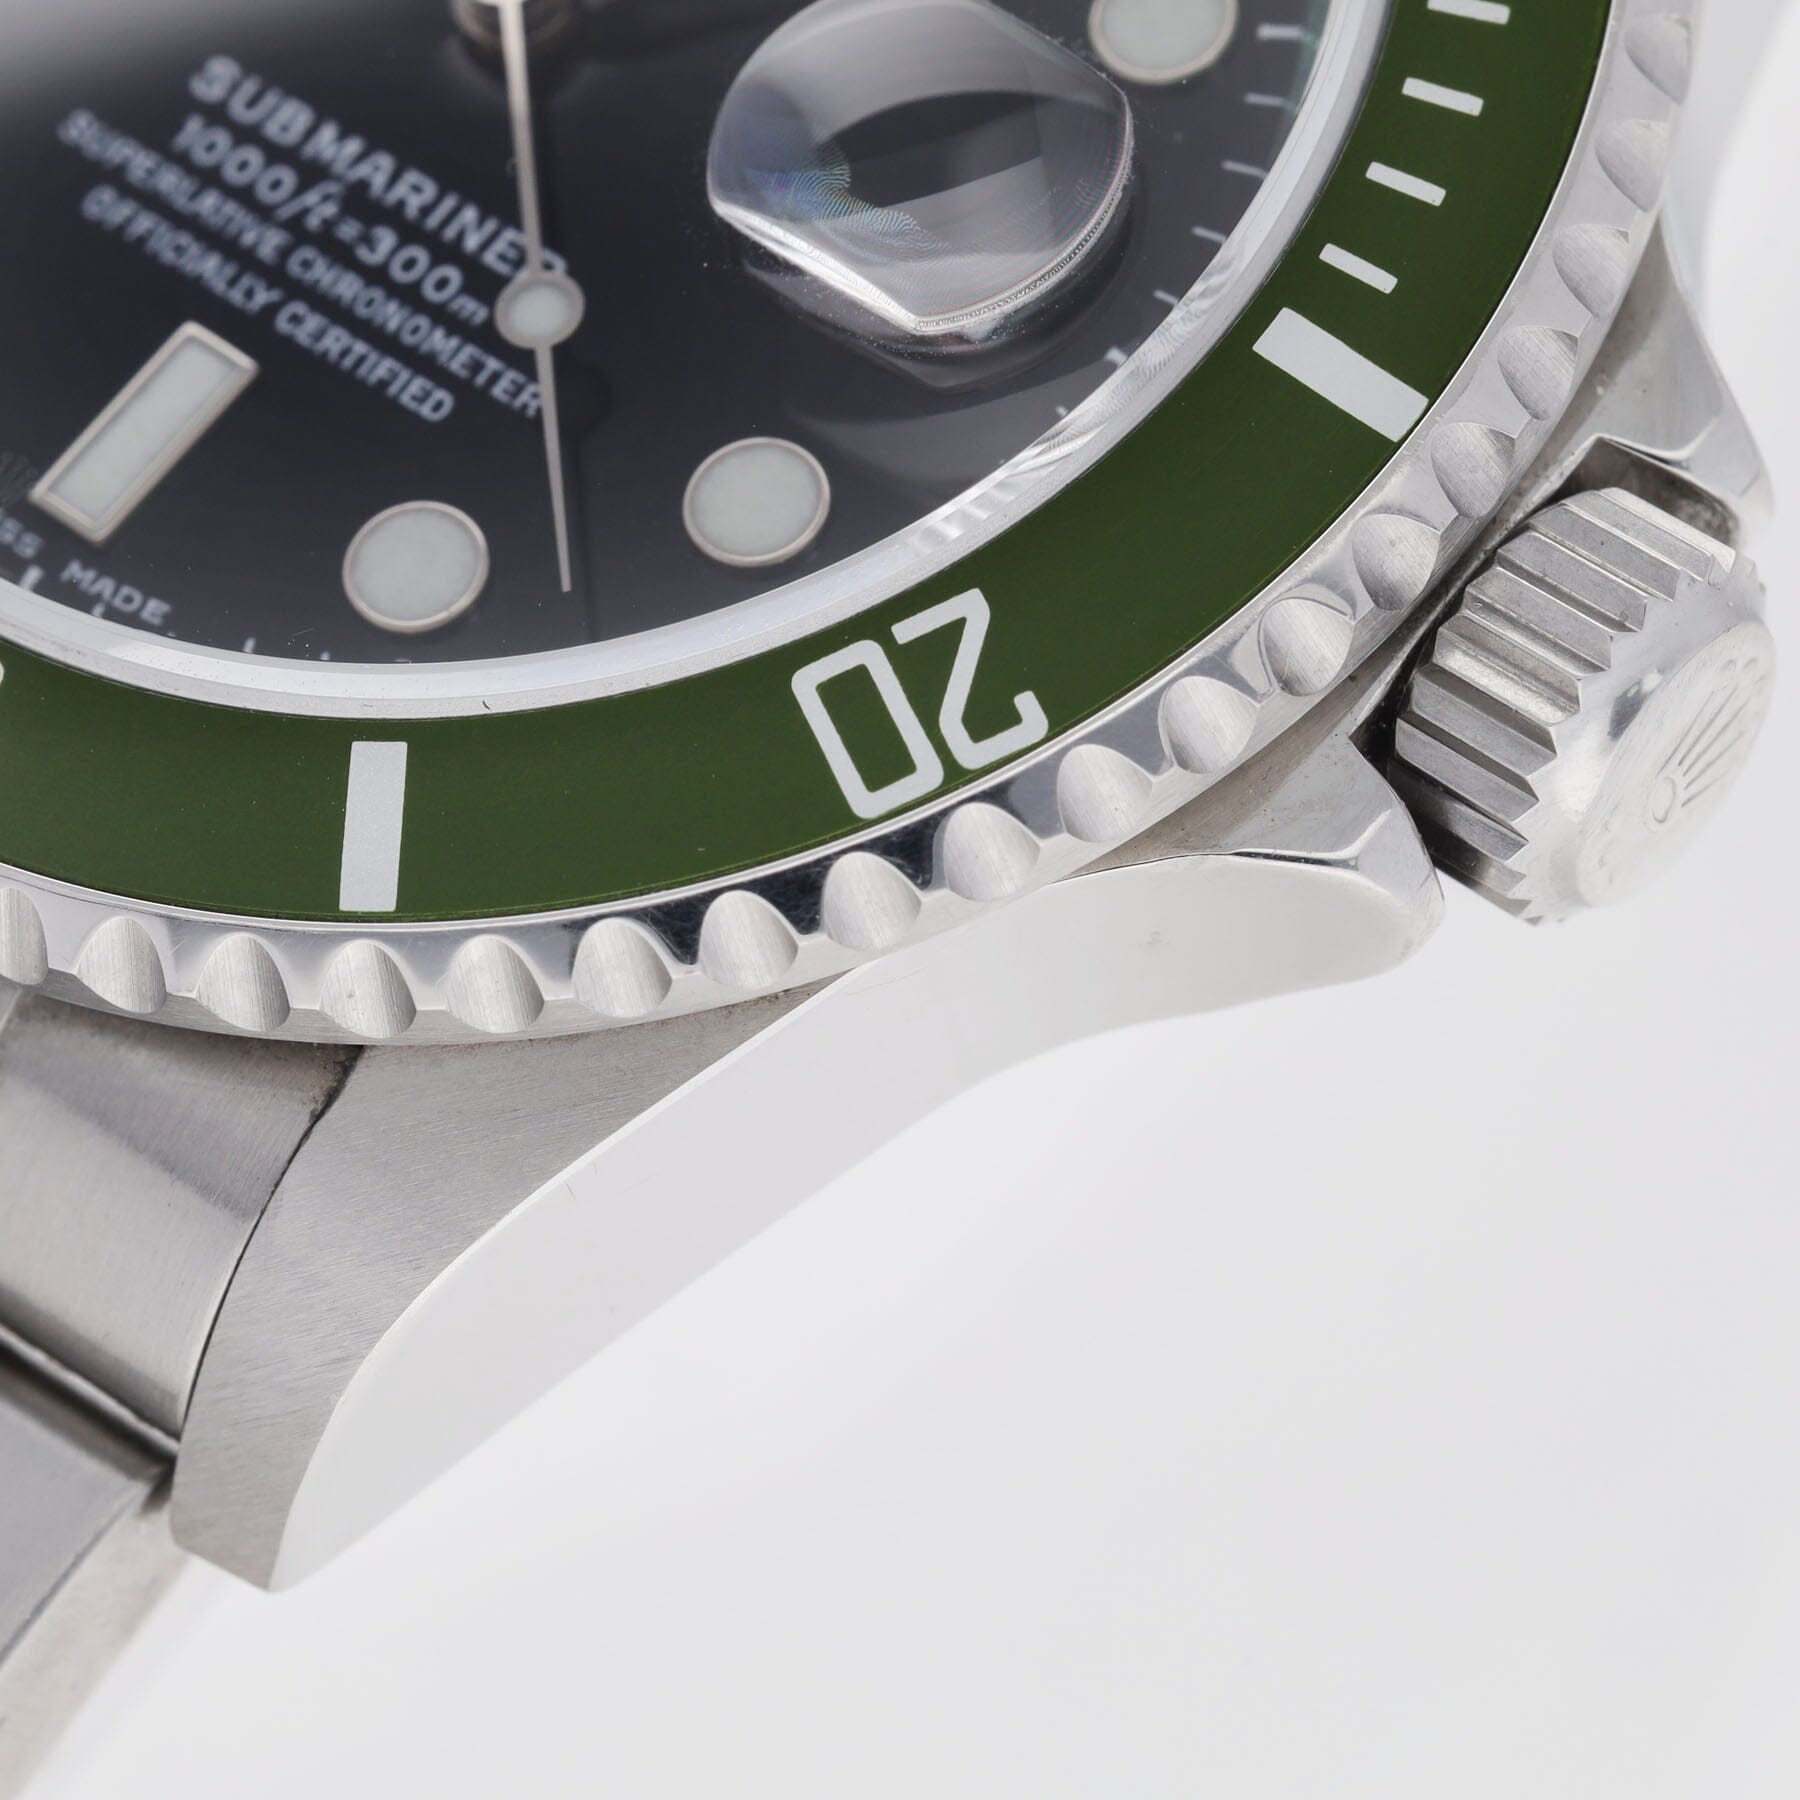 Rolex Submariner 50th Anniversary Steel Watch